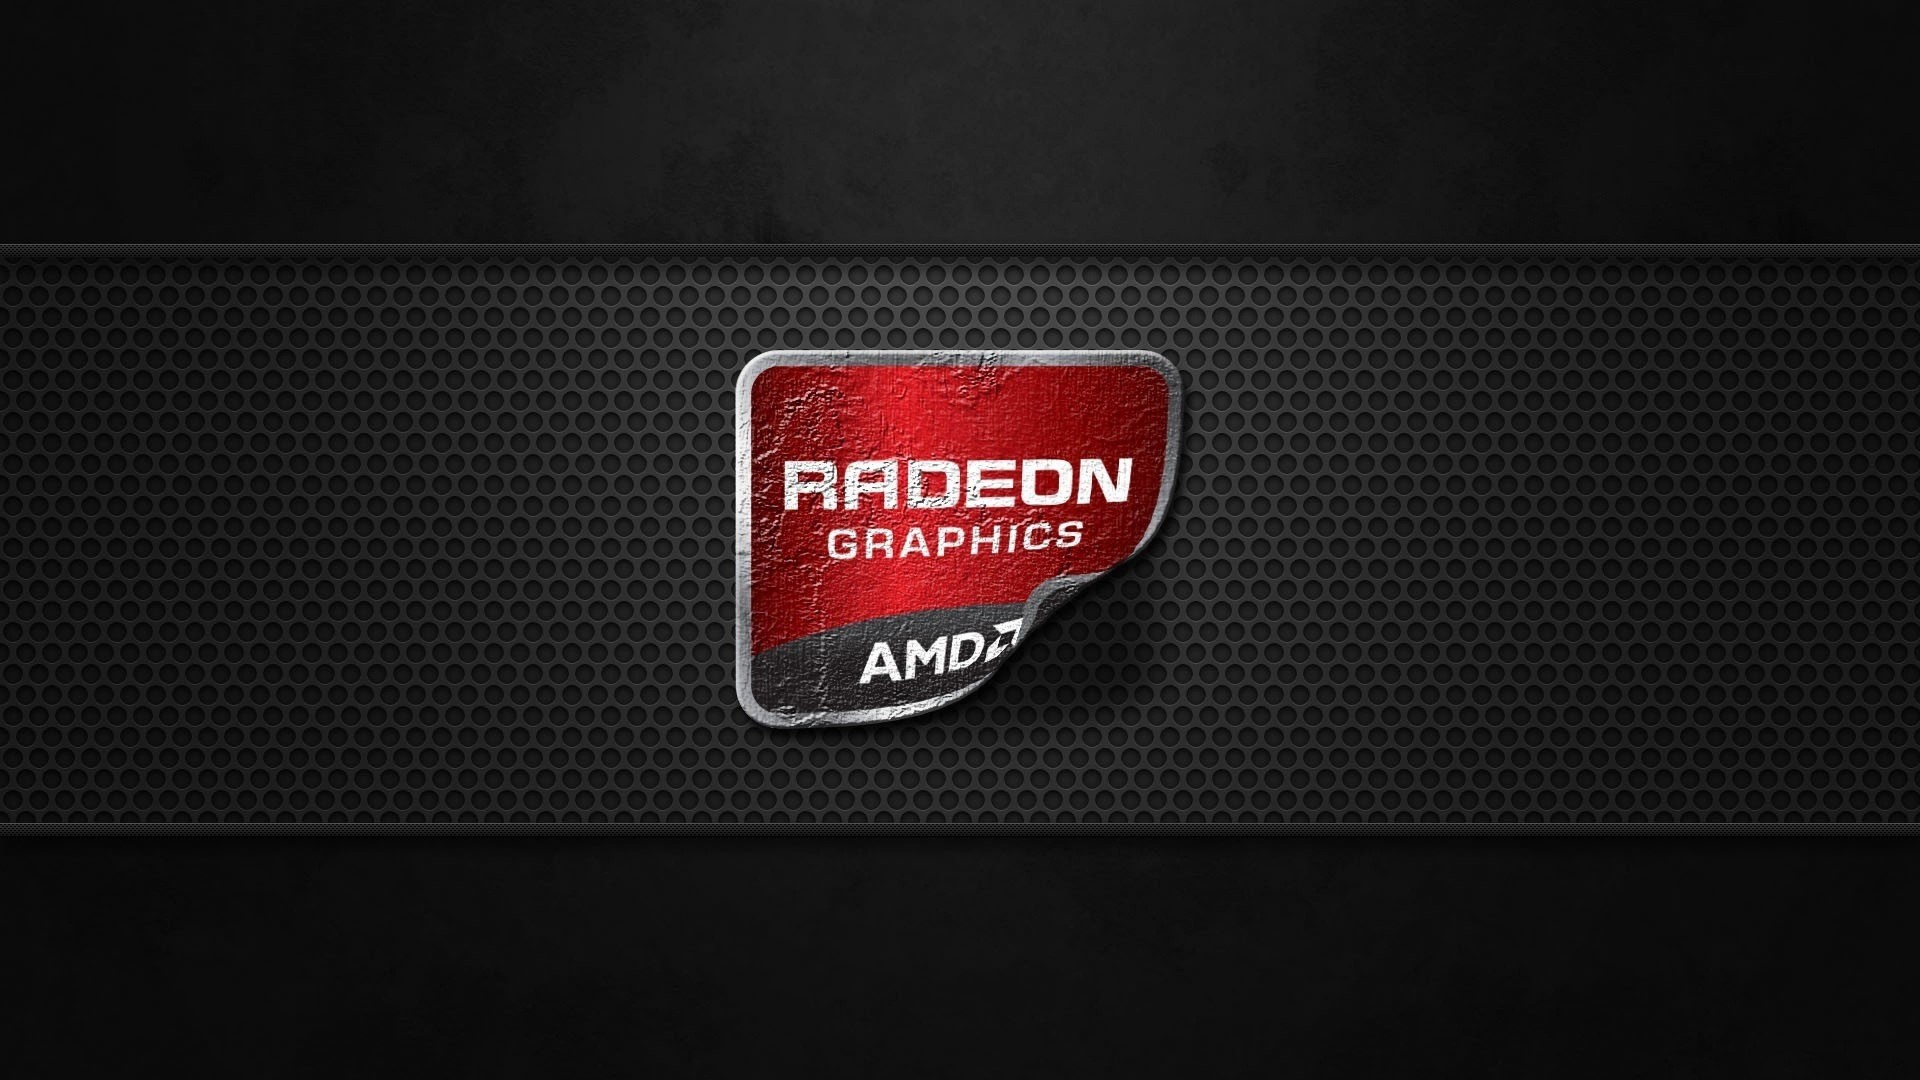 AMD Radeon Graphics Wallpaper for Desktop 1920x1080